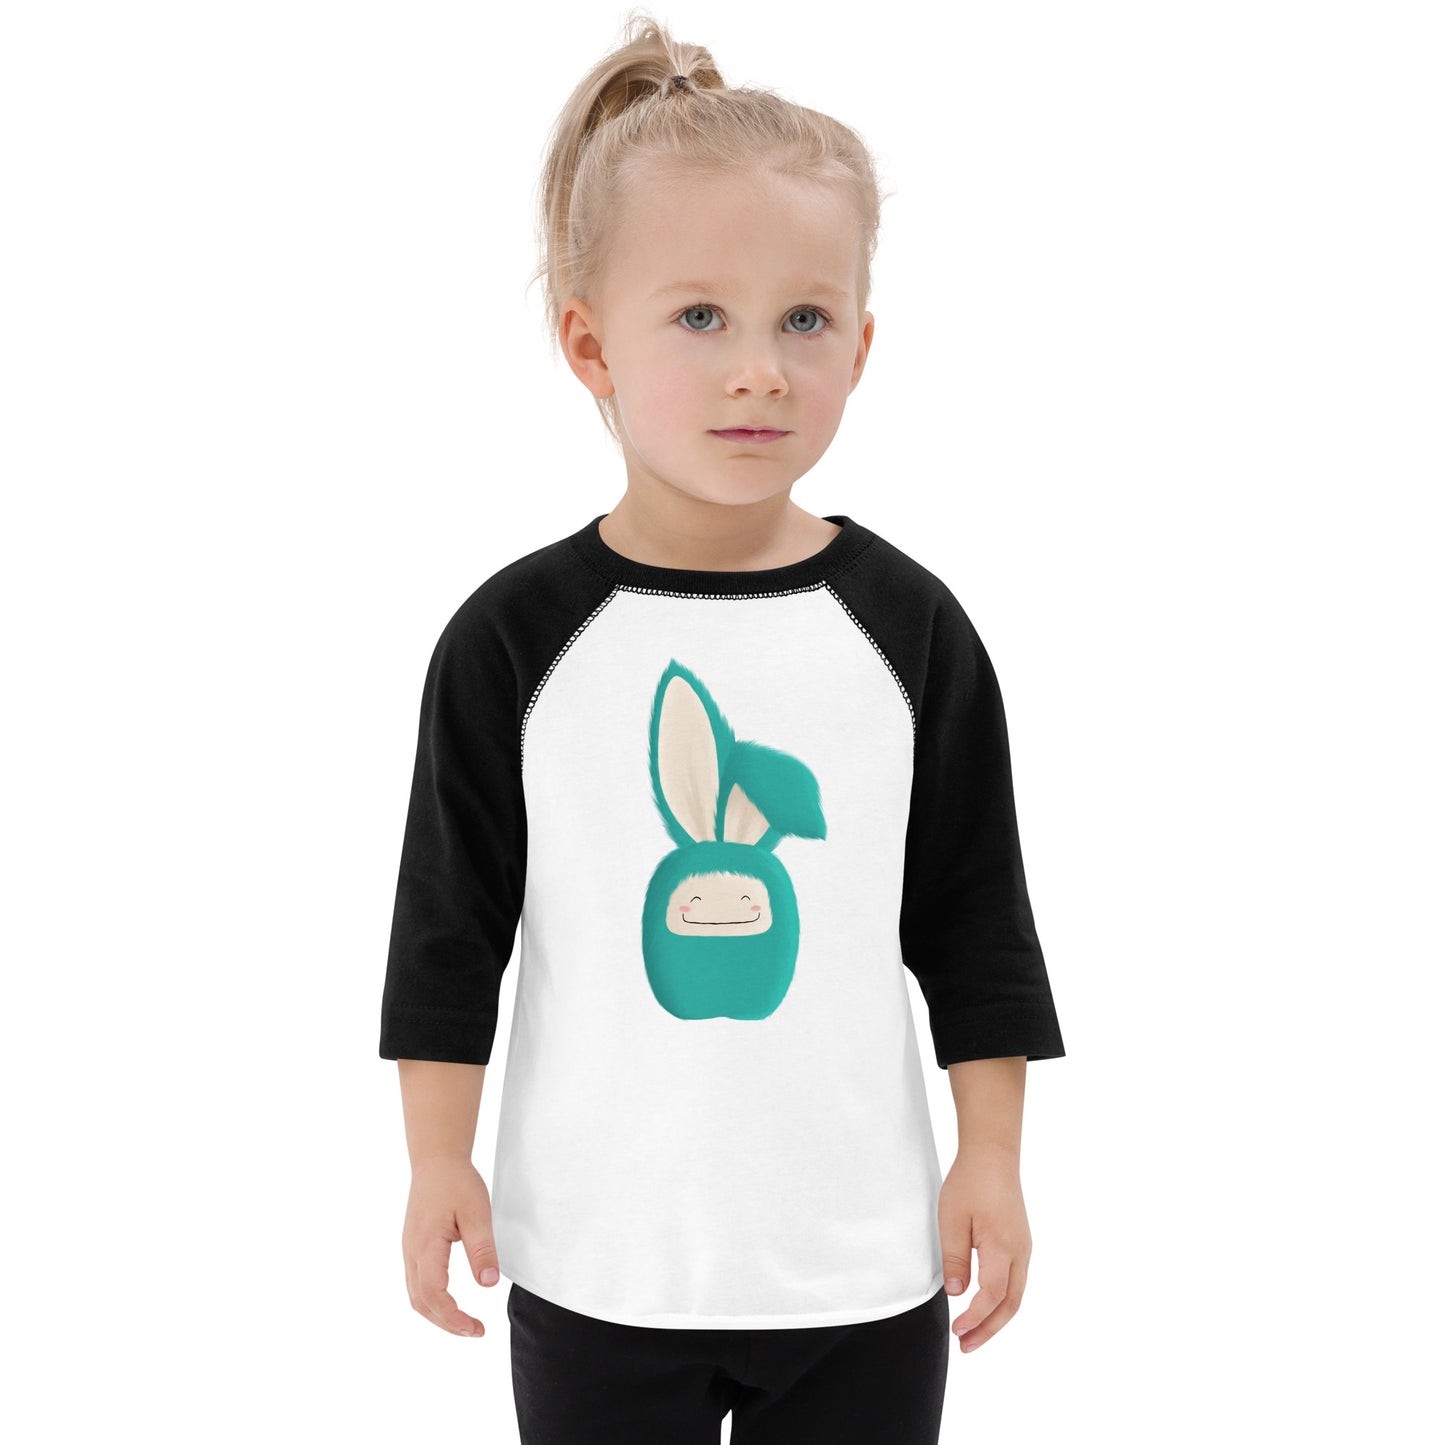 Toddler baseball shirt Bunny Floppy Ear Turquoise